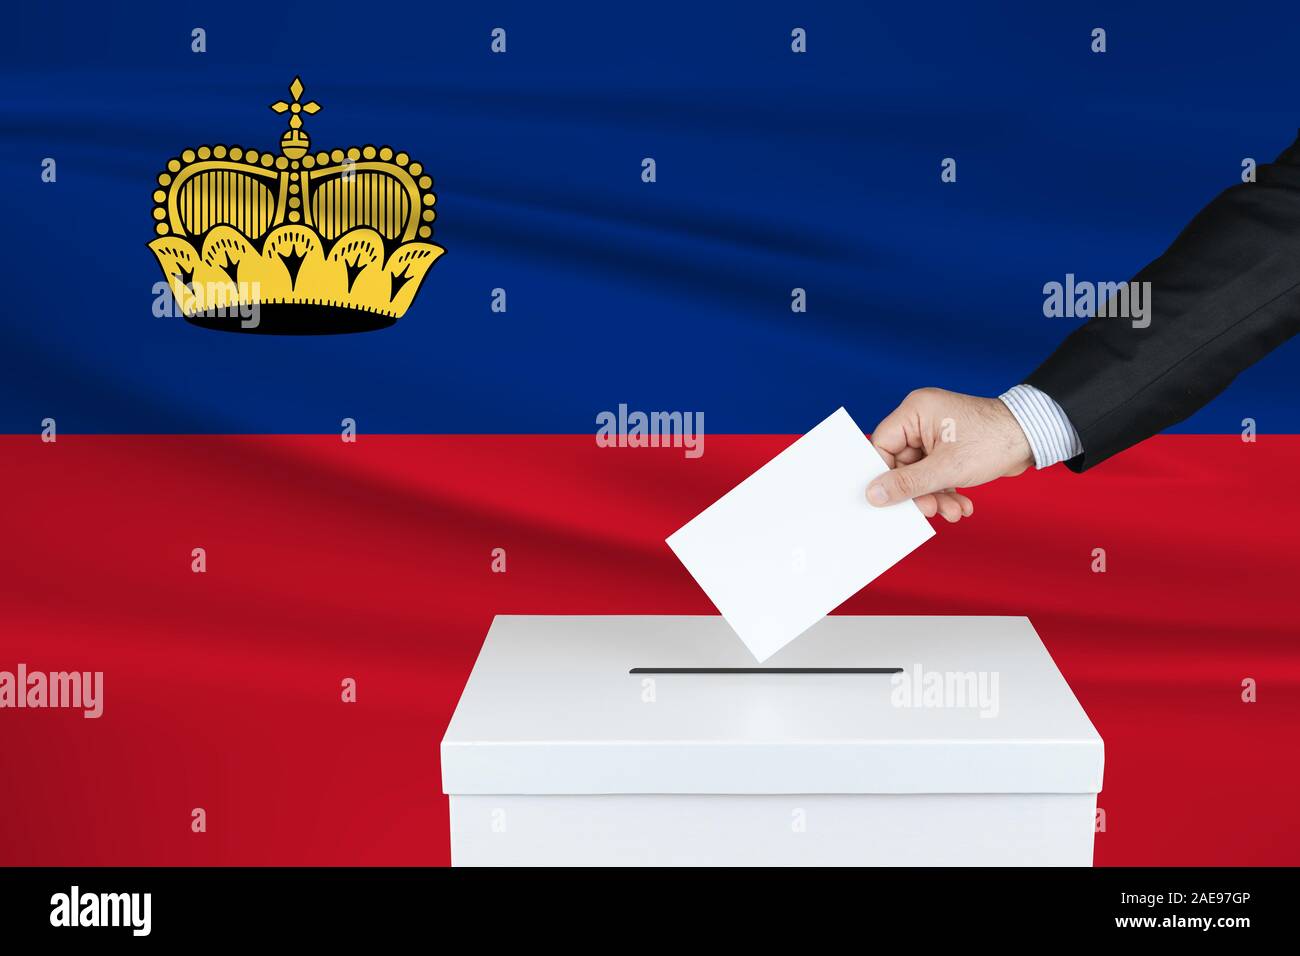 Election in Liechtenstein. The hand of man putting his vote in the ballot box. Waved Liechtenstein flag on background. Stock Photo